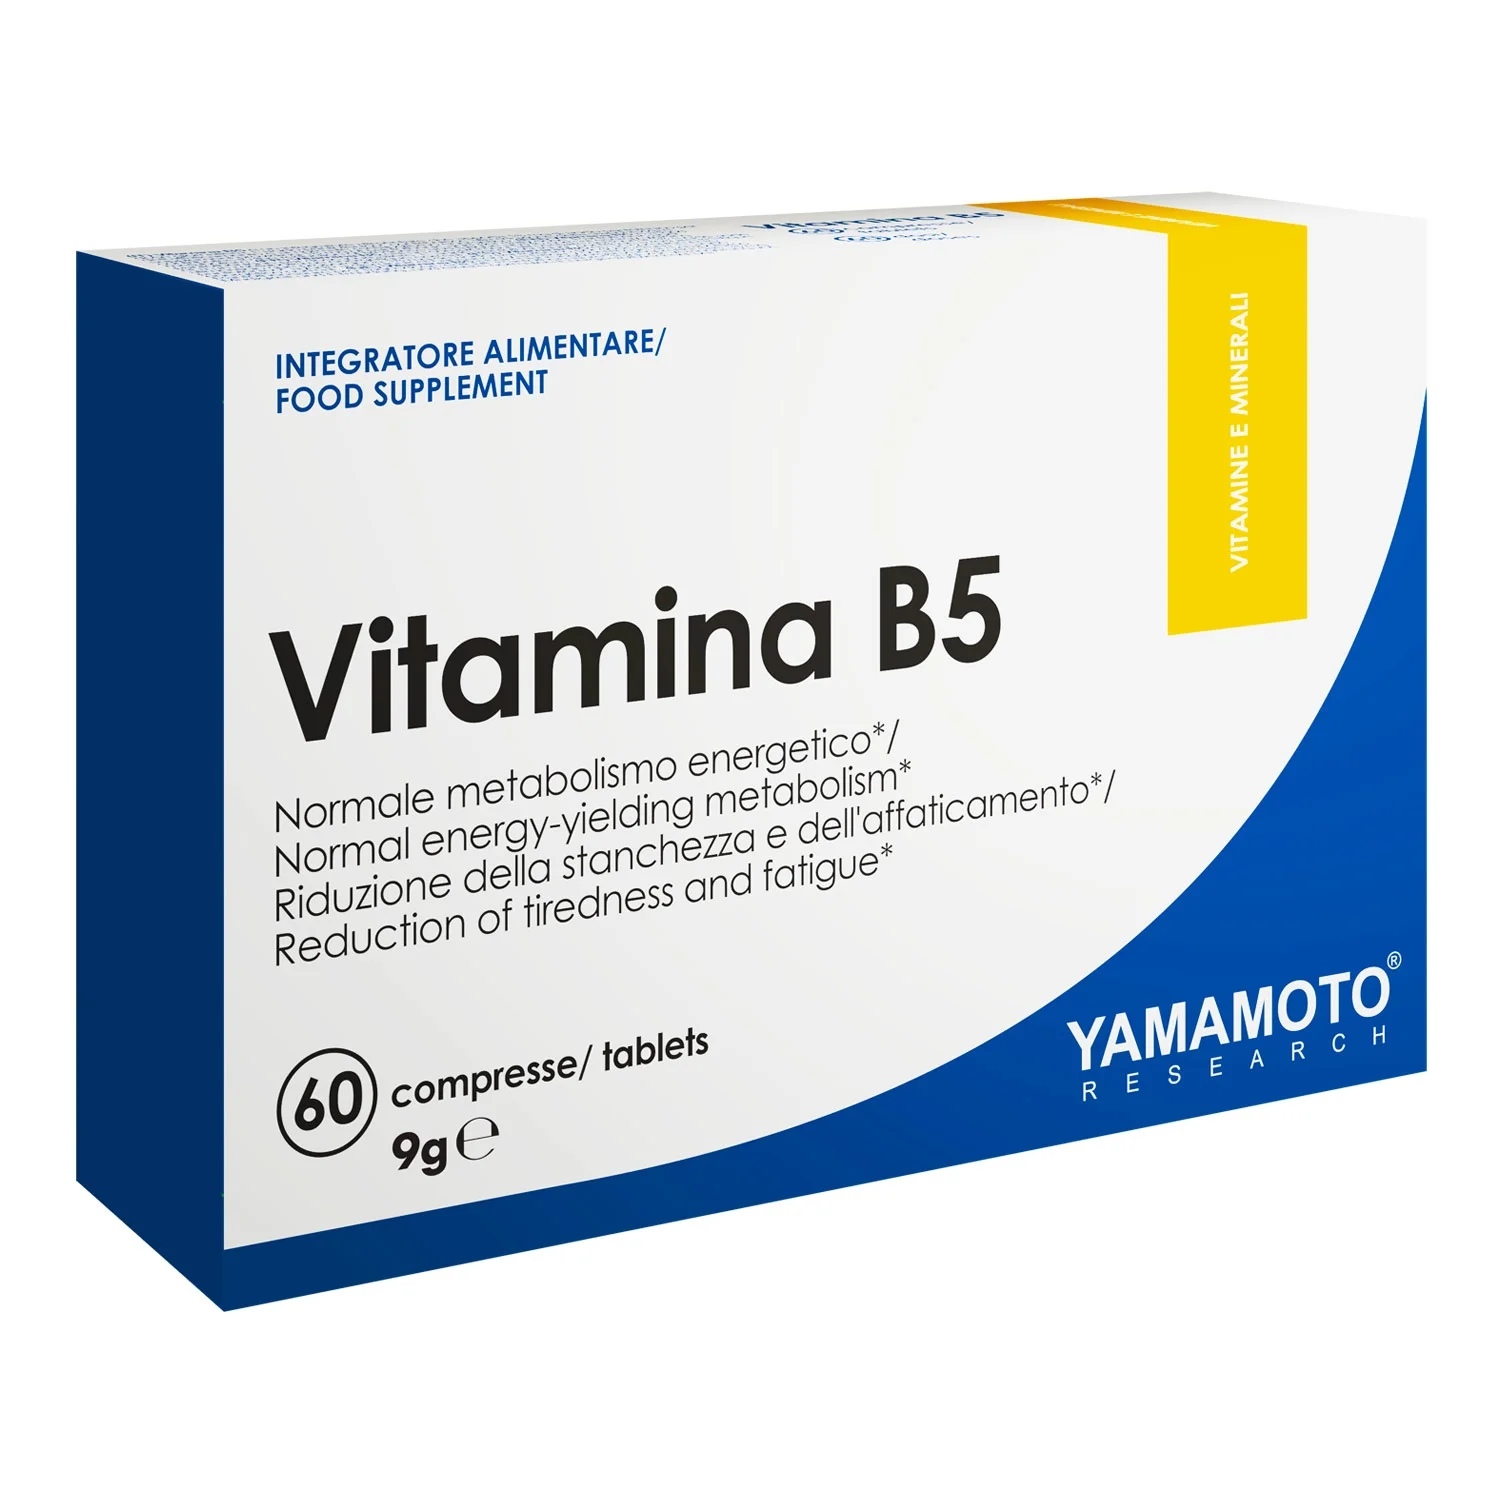 Yamamoto Natural Series Vitamina B5 / 60 tablets